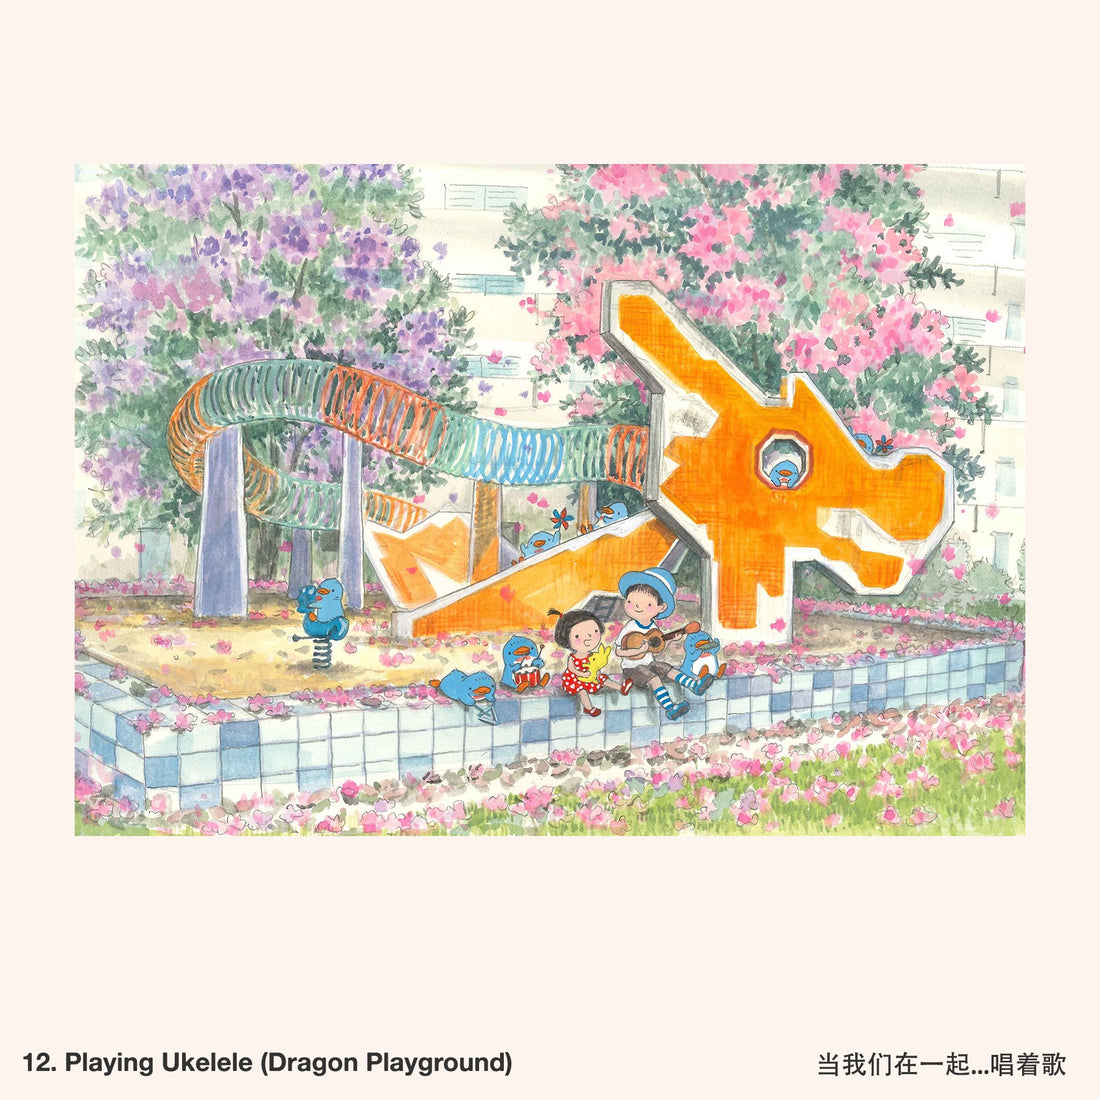 12. Playing Ukulele (Dragon Playground) Artwork